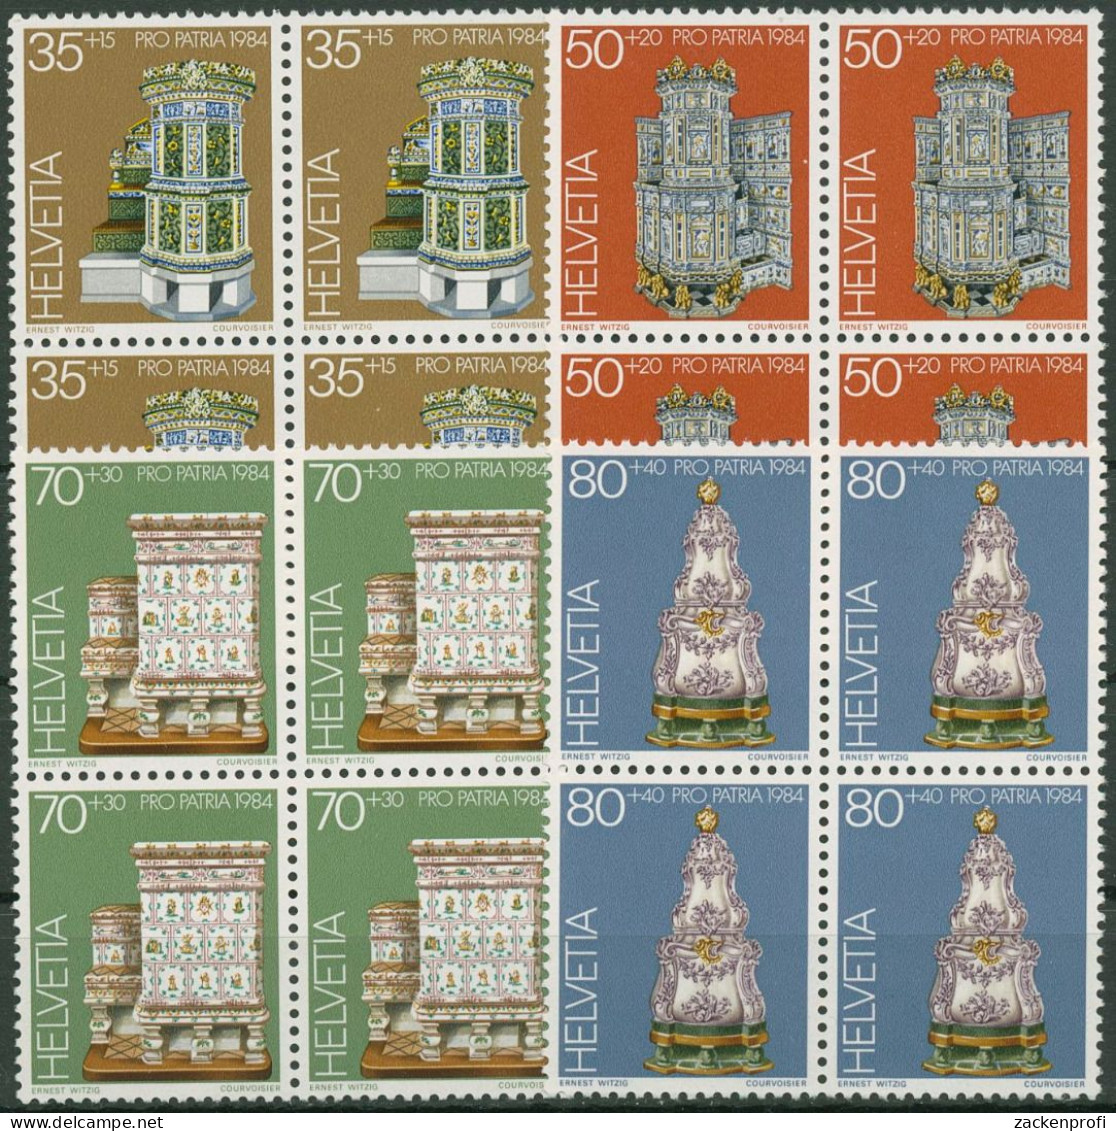 Schweiz 1984 Pro Patria Museumsschätze Kachelöfen 1272/75 4er-Block Postfrisch - Ungebraucht